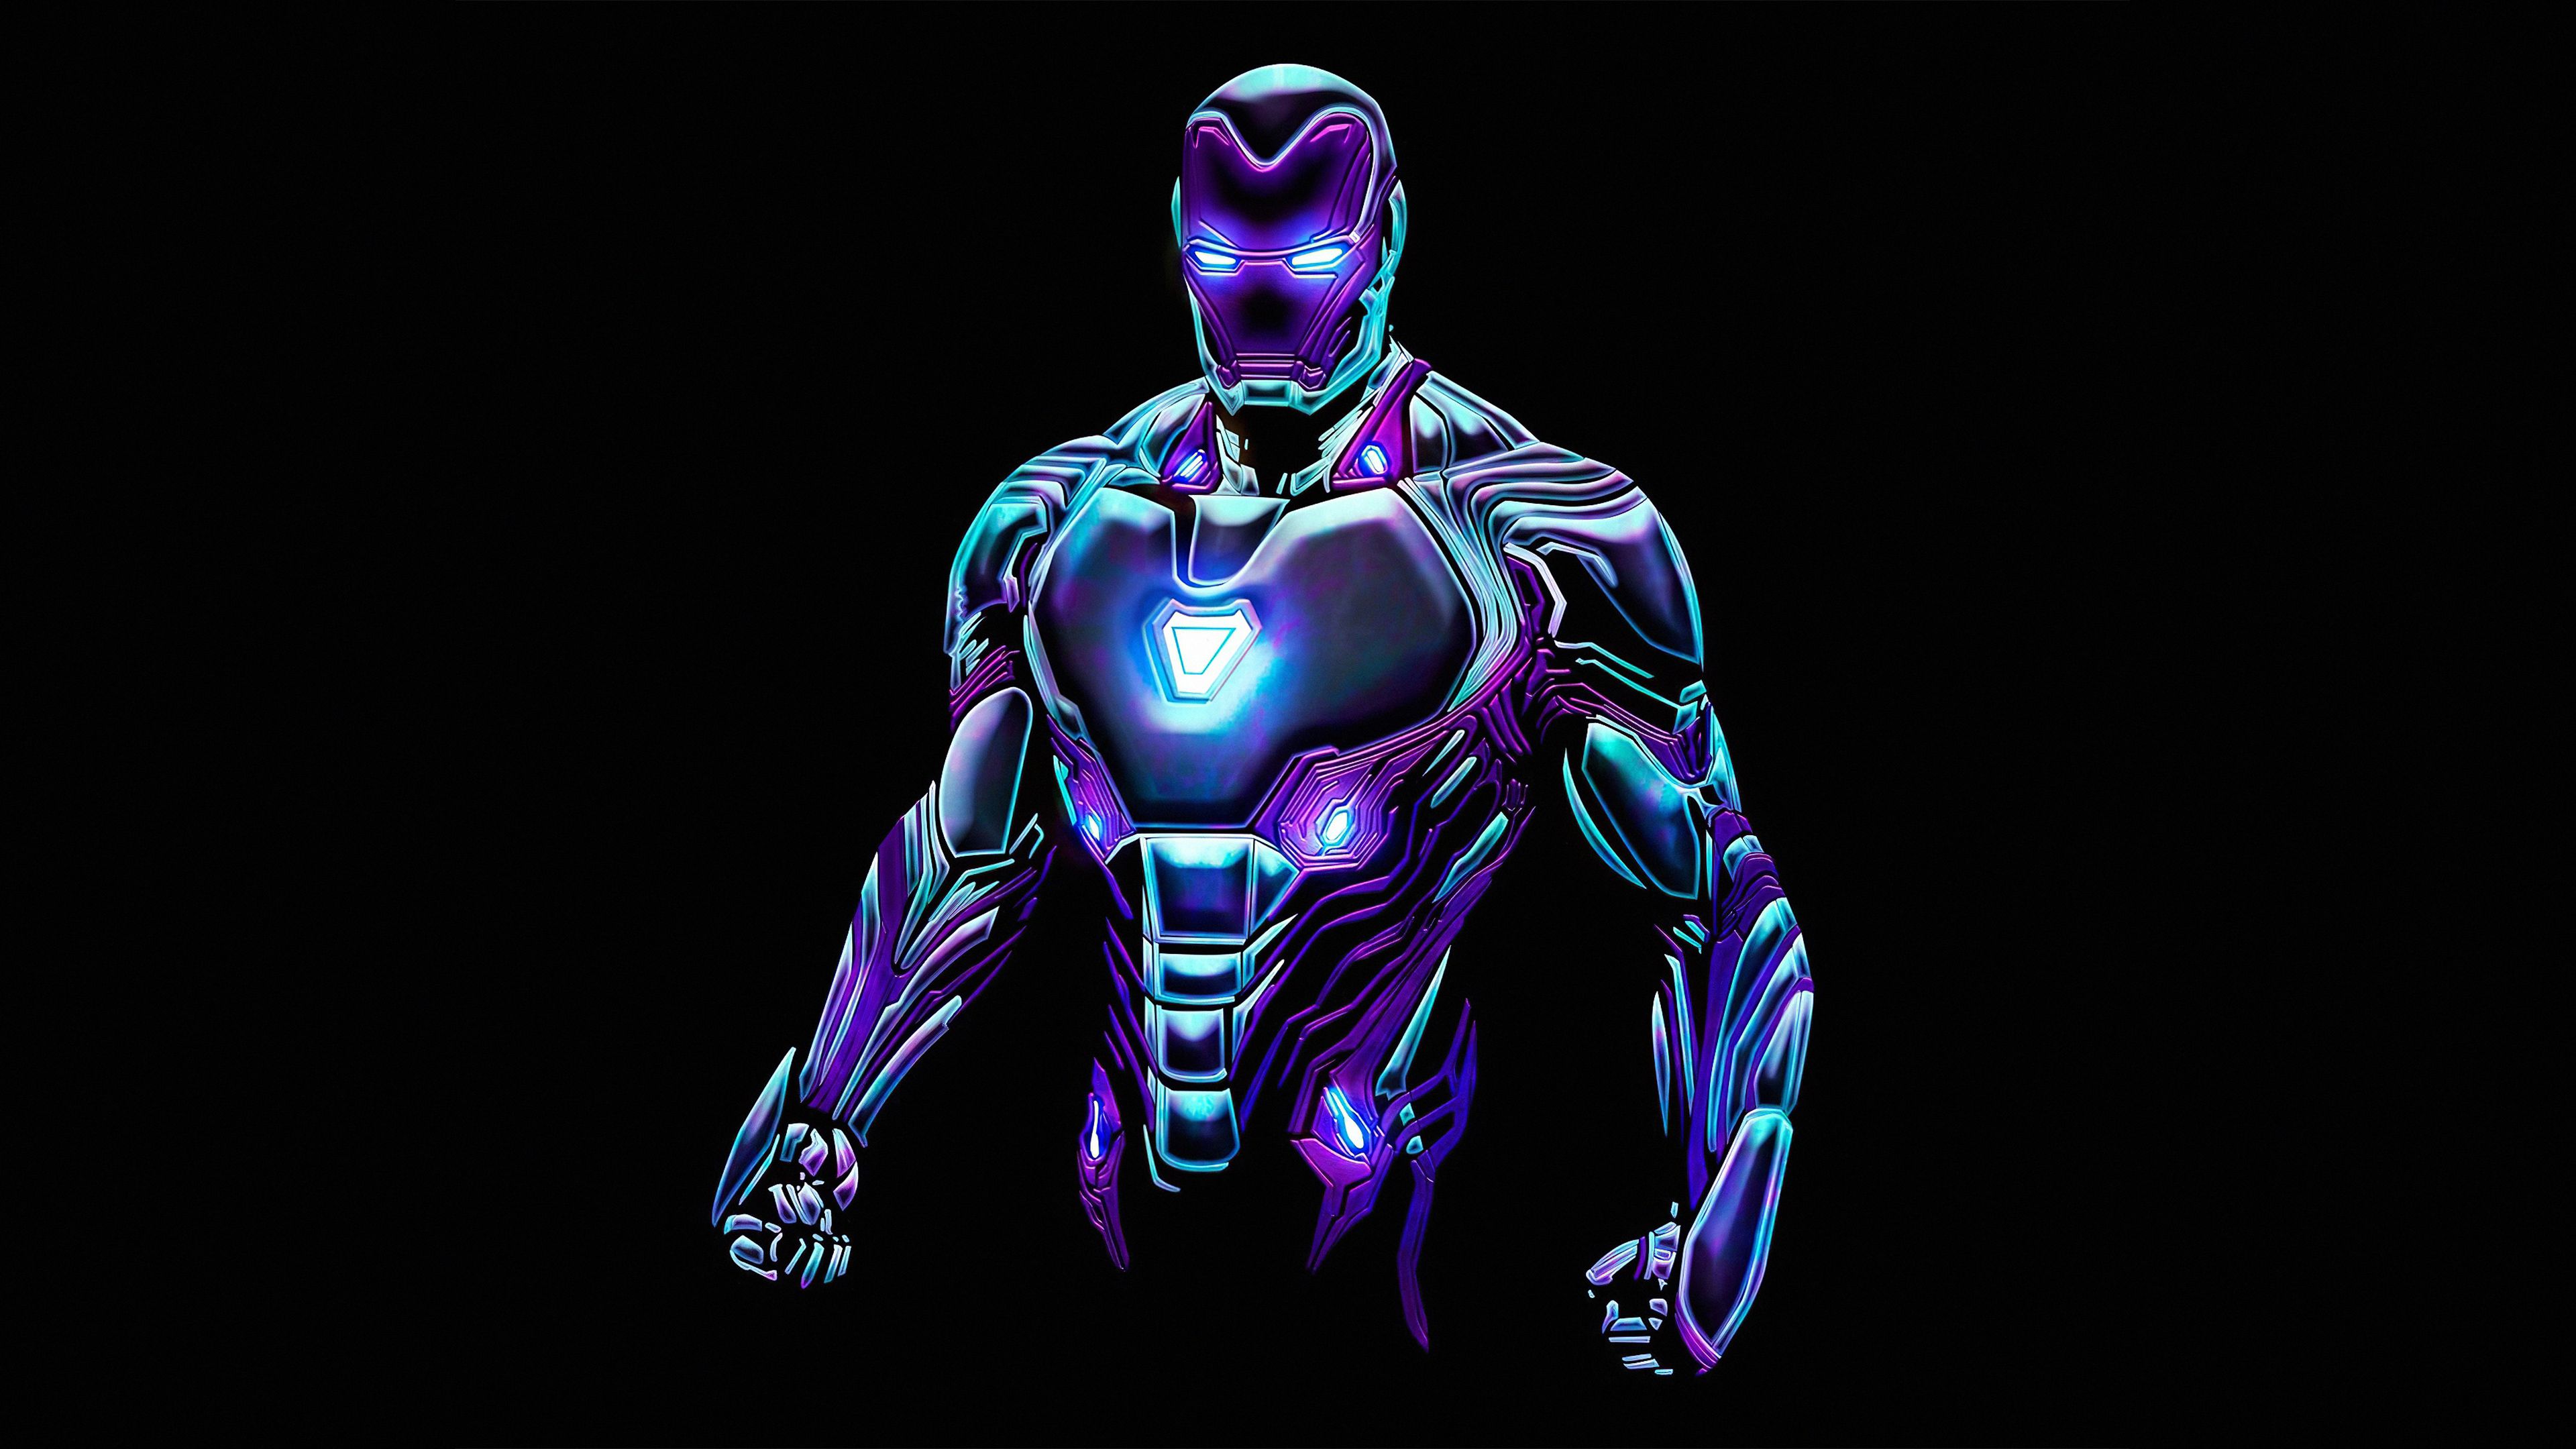 Wallpaper 4k Neon Iron Man Fan art 4k .pixel4k.com